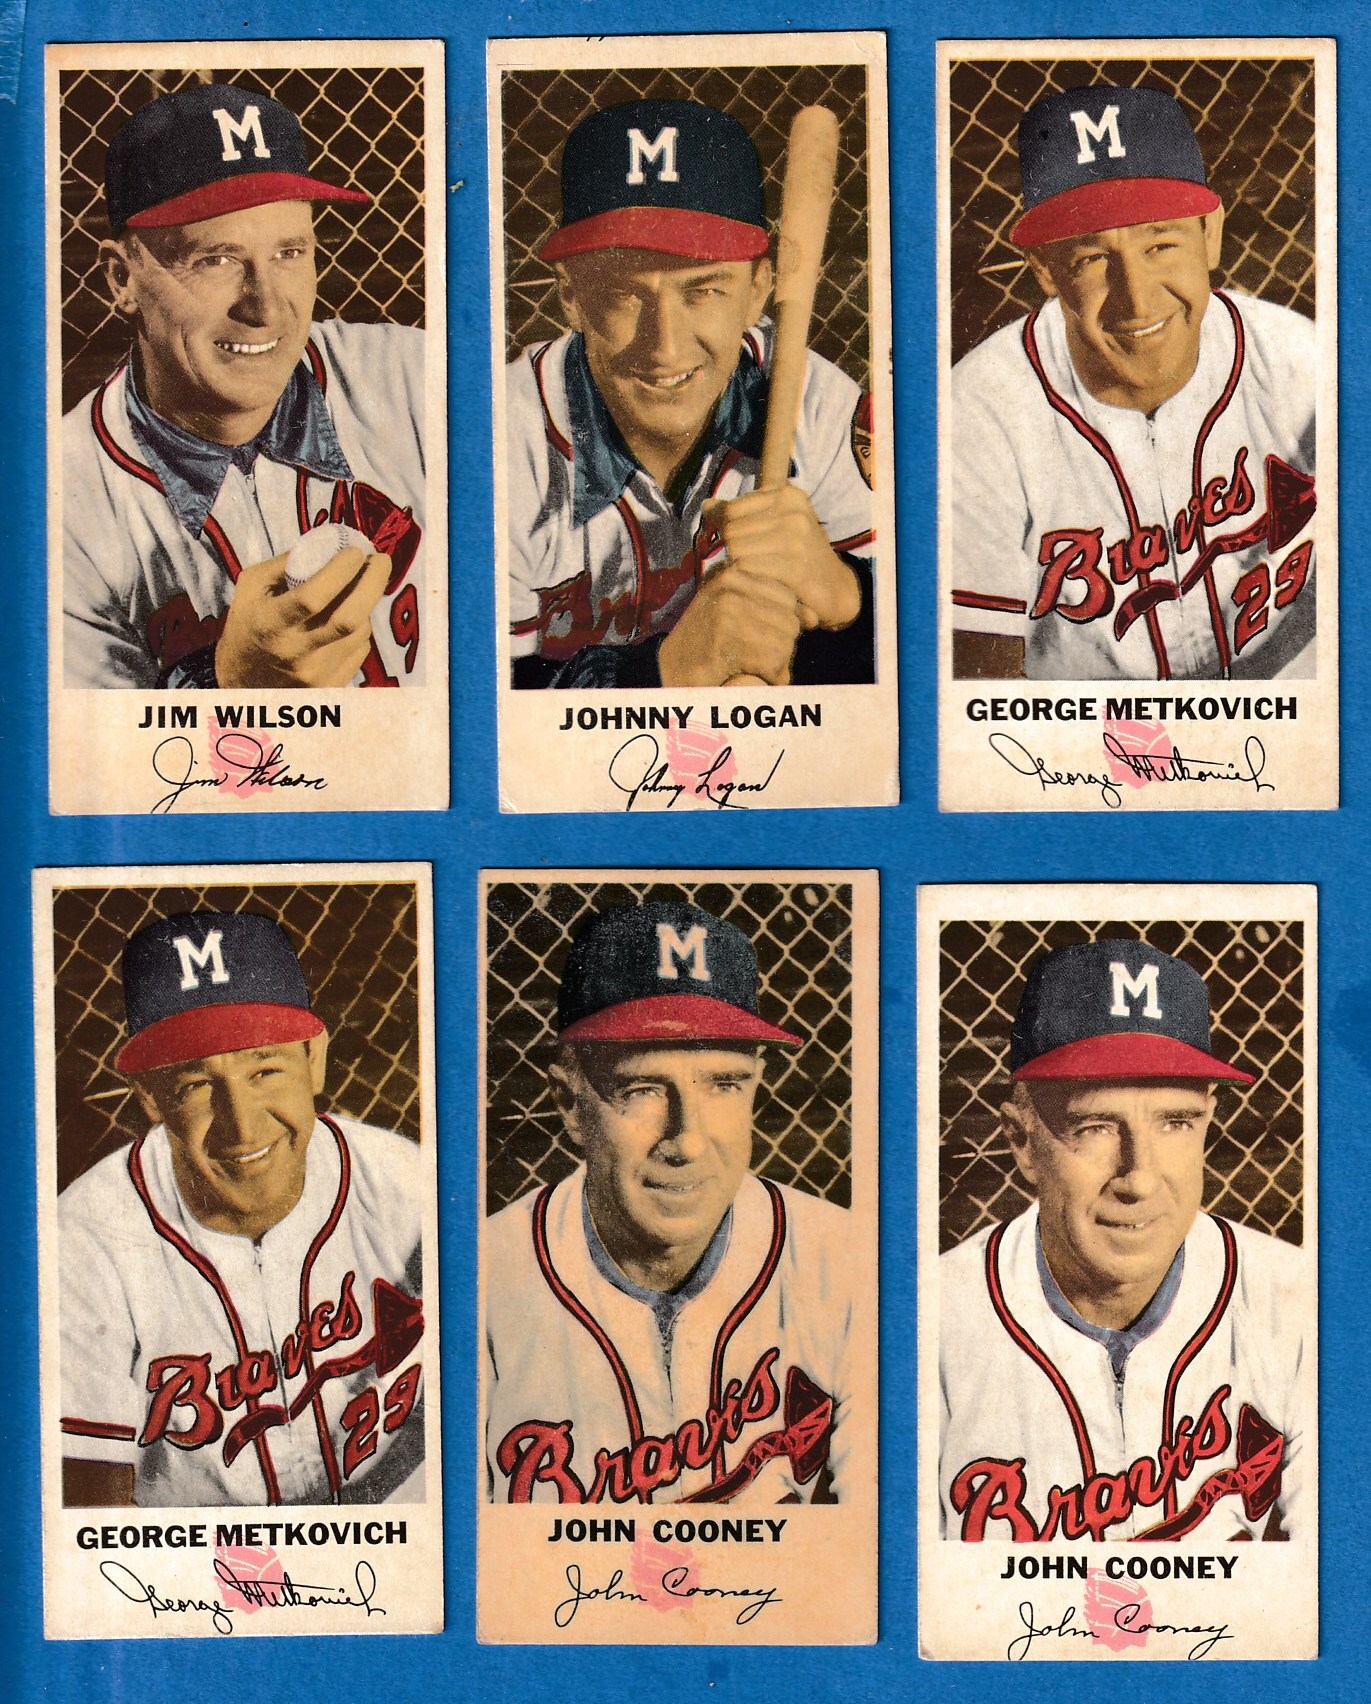 1954 Johnston Cookies #27 George Metkovich (Braves) Baseball cards value